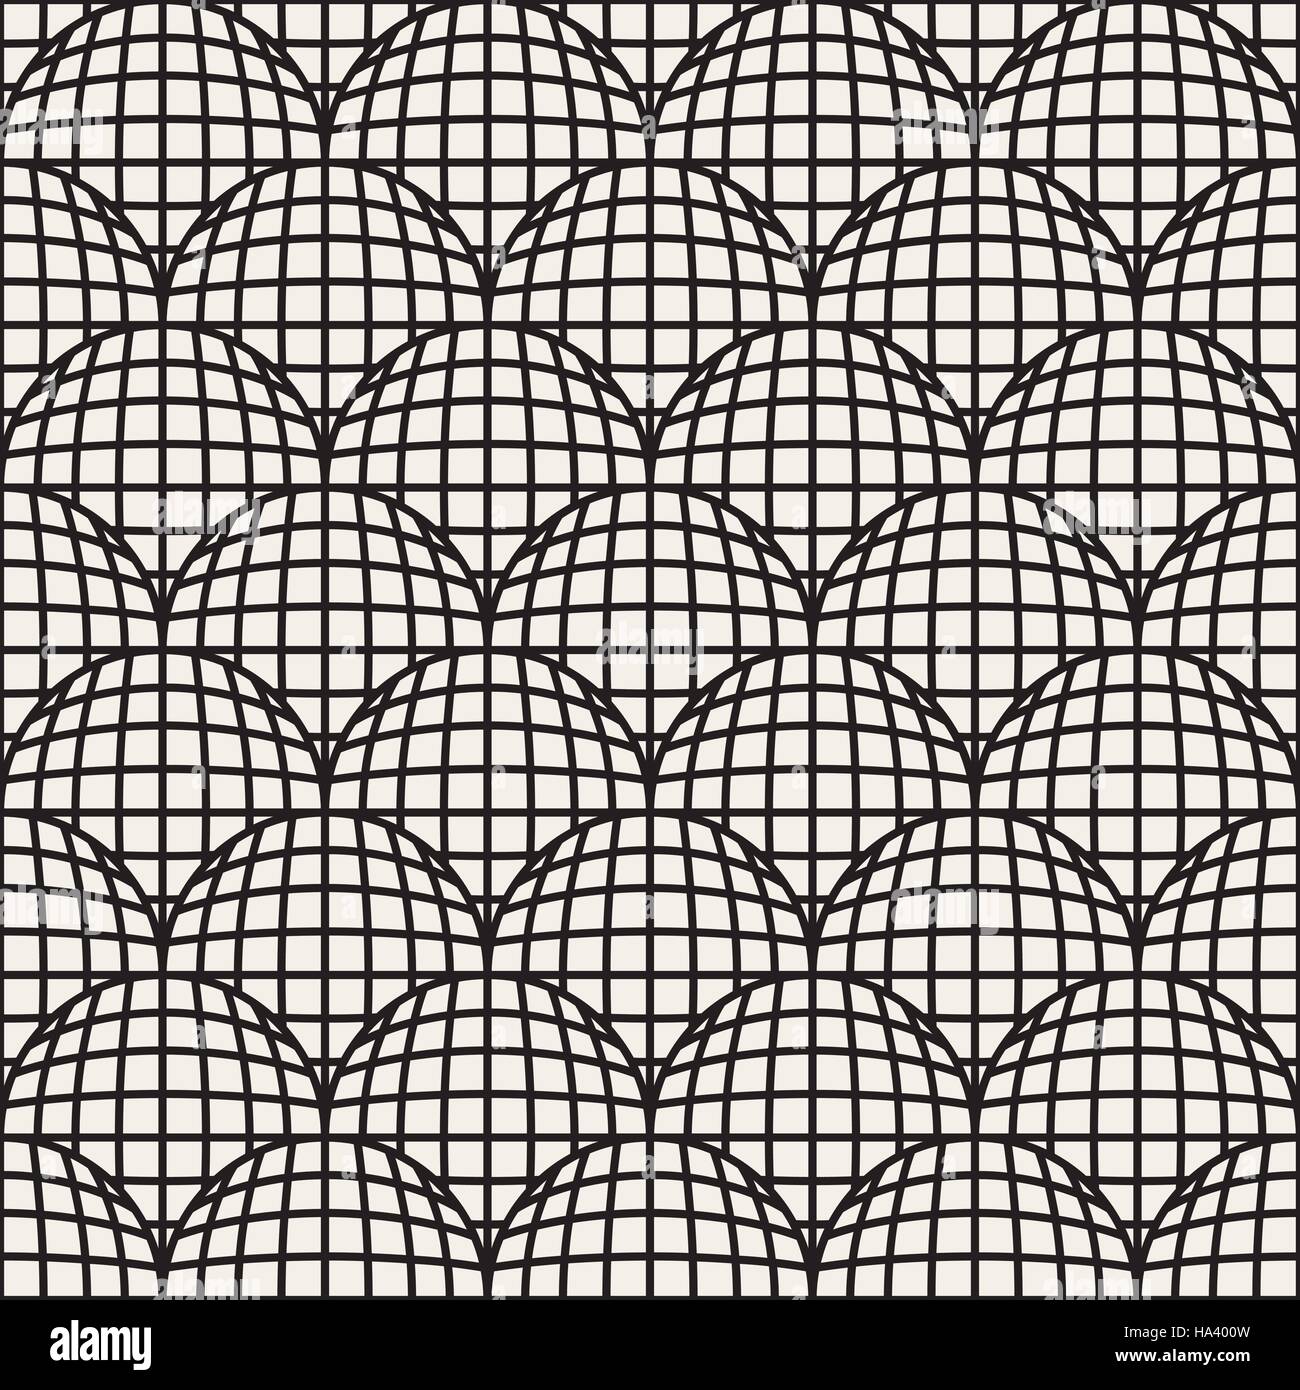 Seamless Vector Retro Noir et blanc motif grille cercles géométriques Illustration de Vecteur